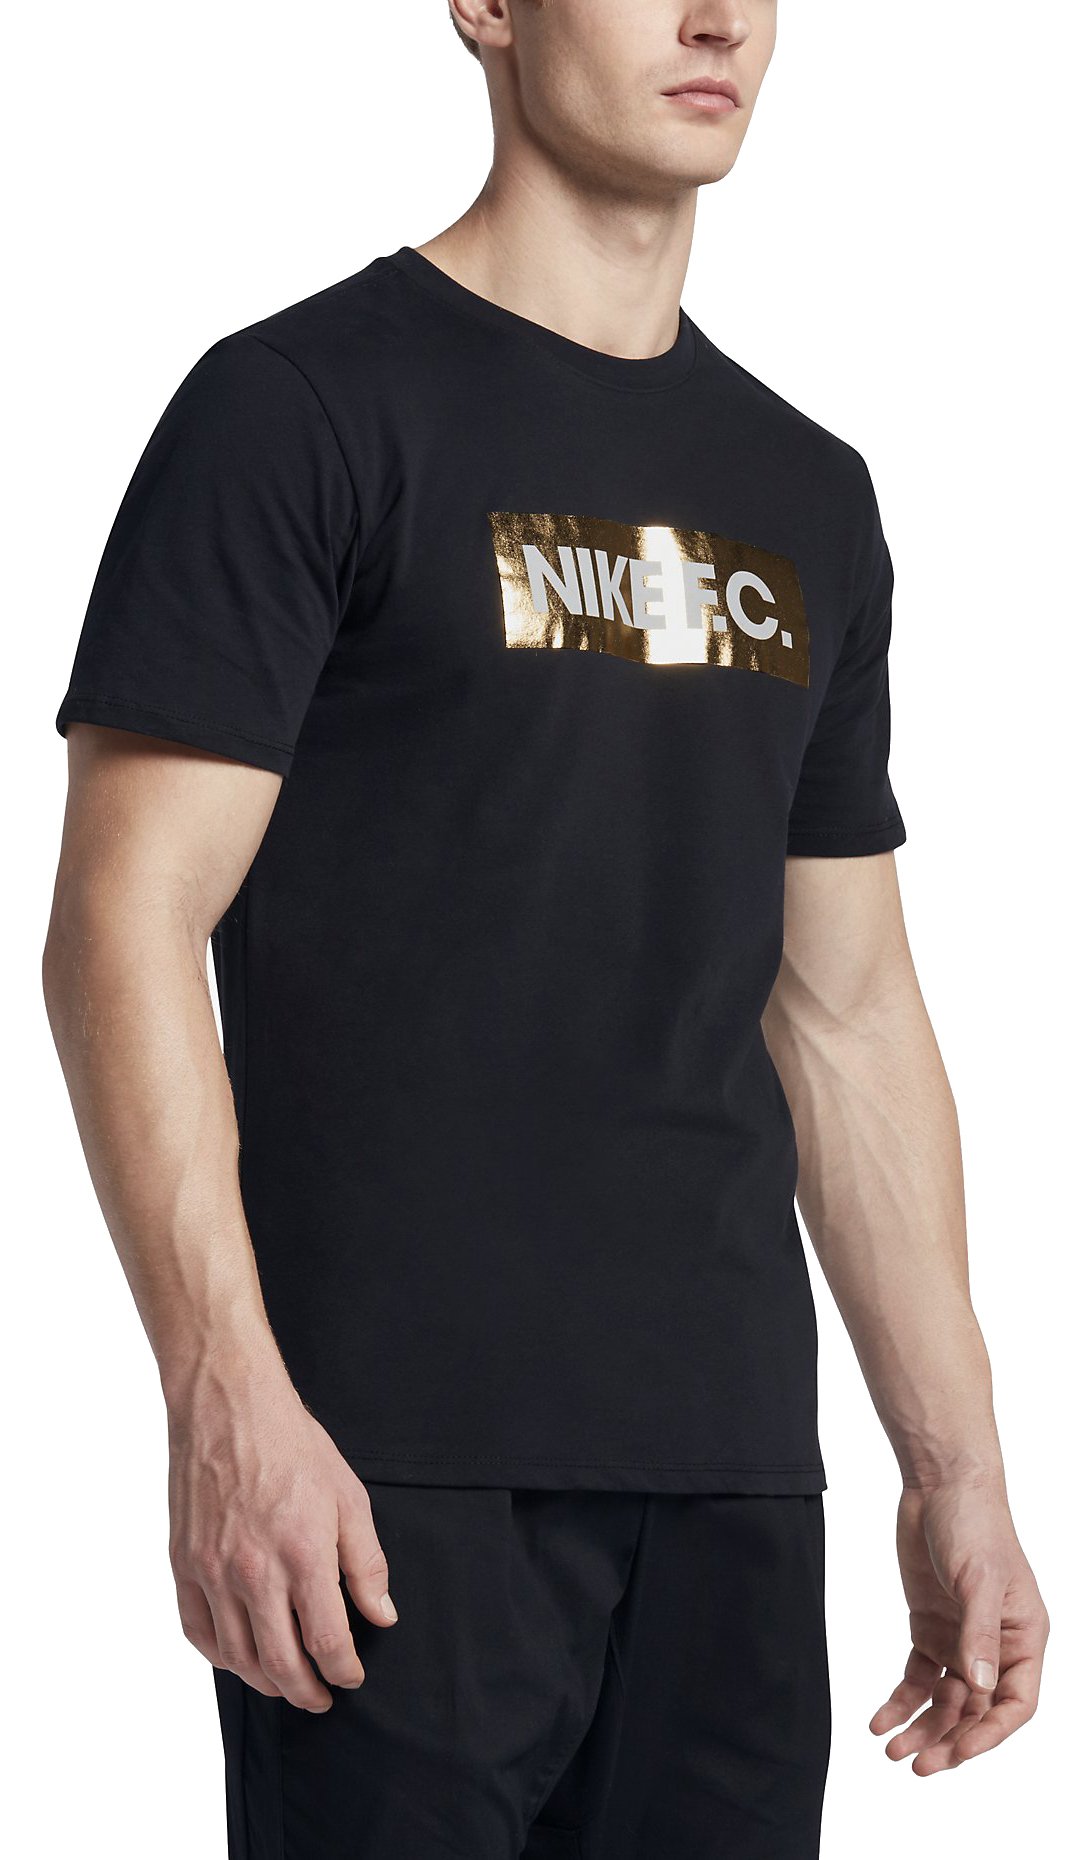 Pánské triko s krátkým rukávem Nike FC Foil